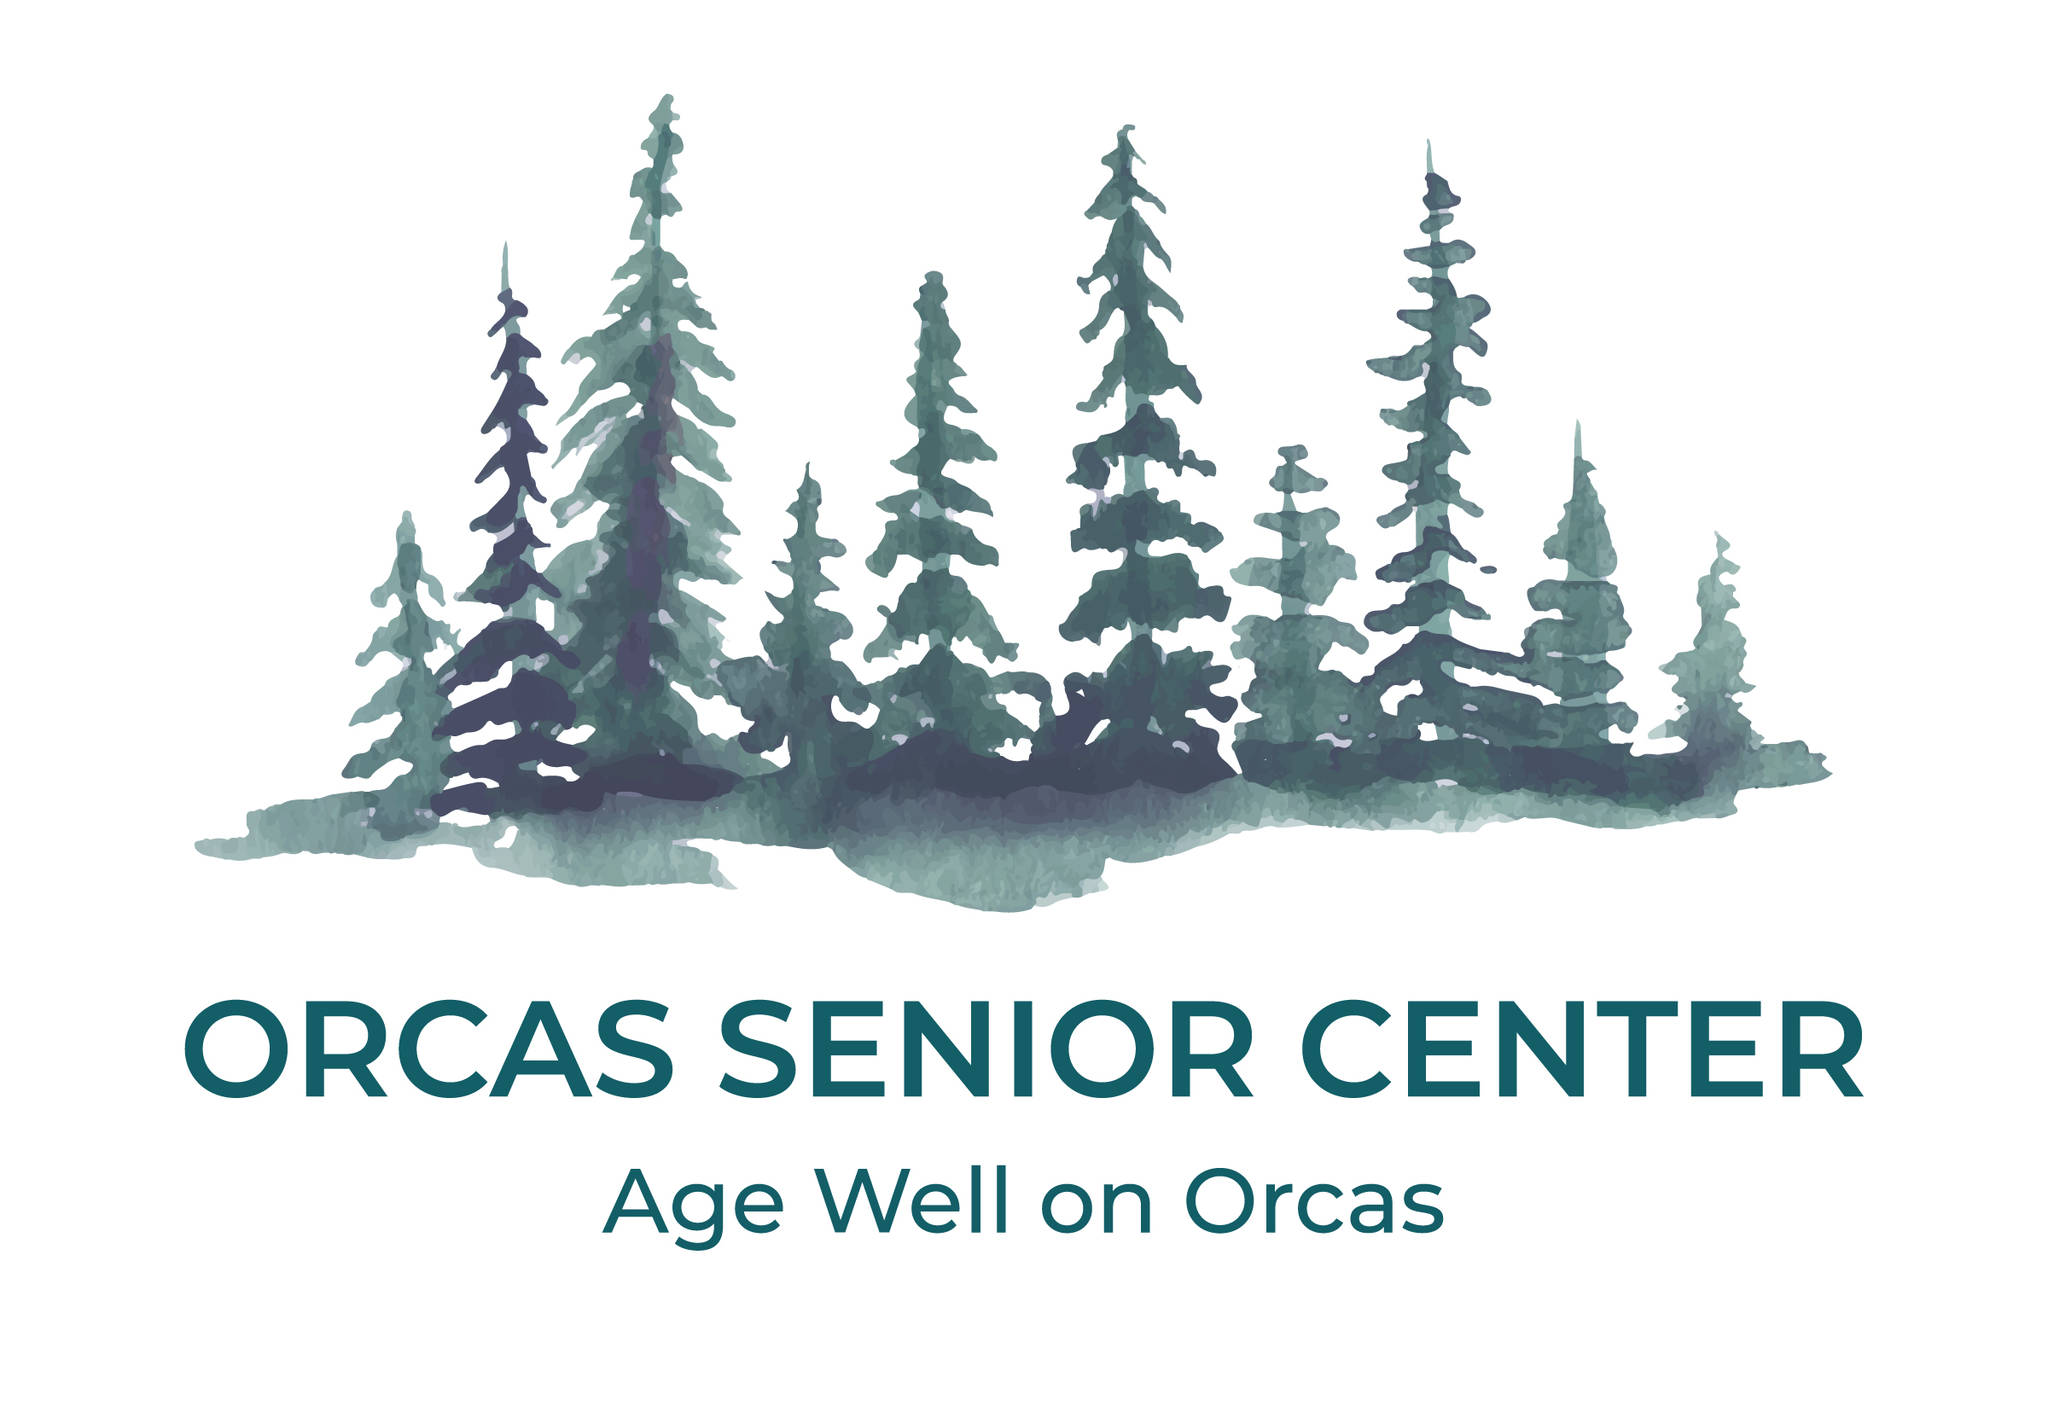 The new Orcas Senior Center logo.